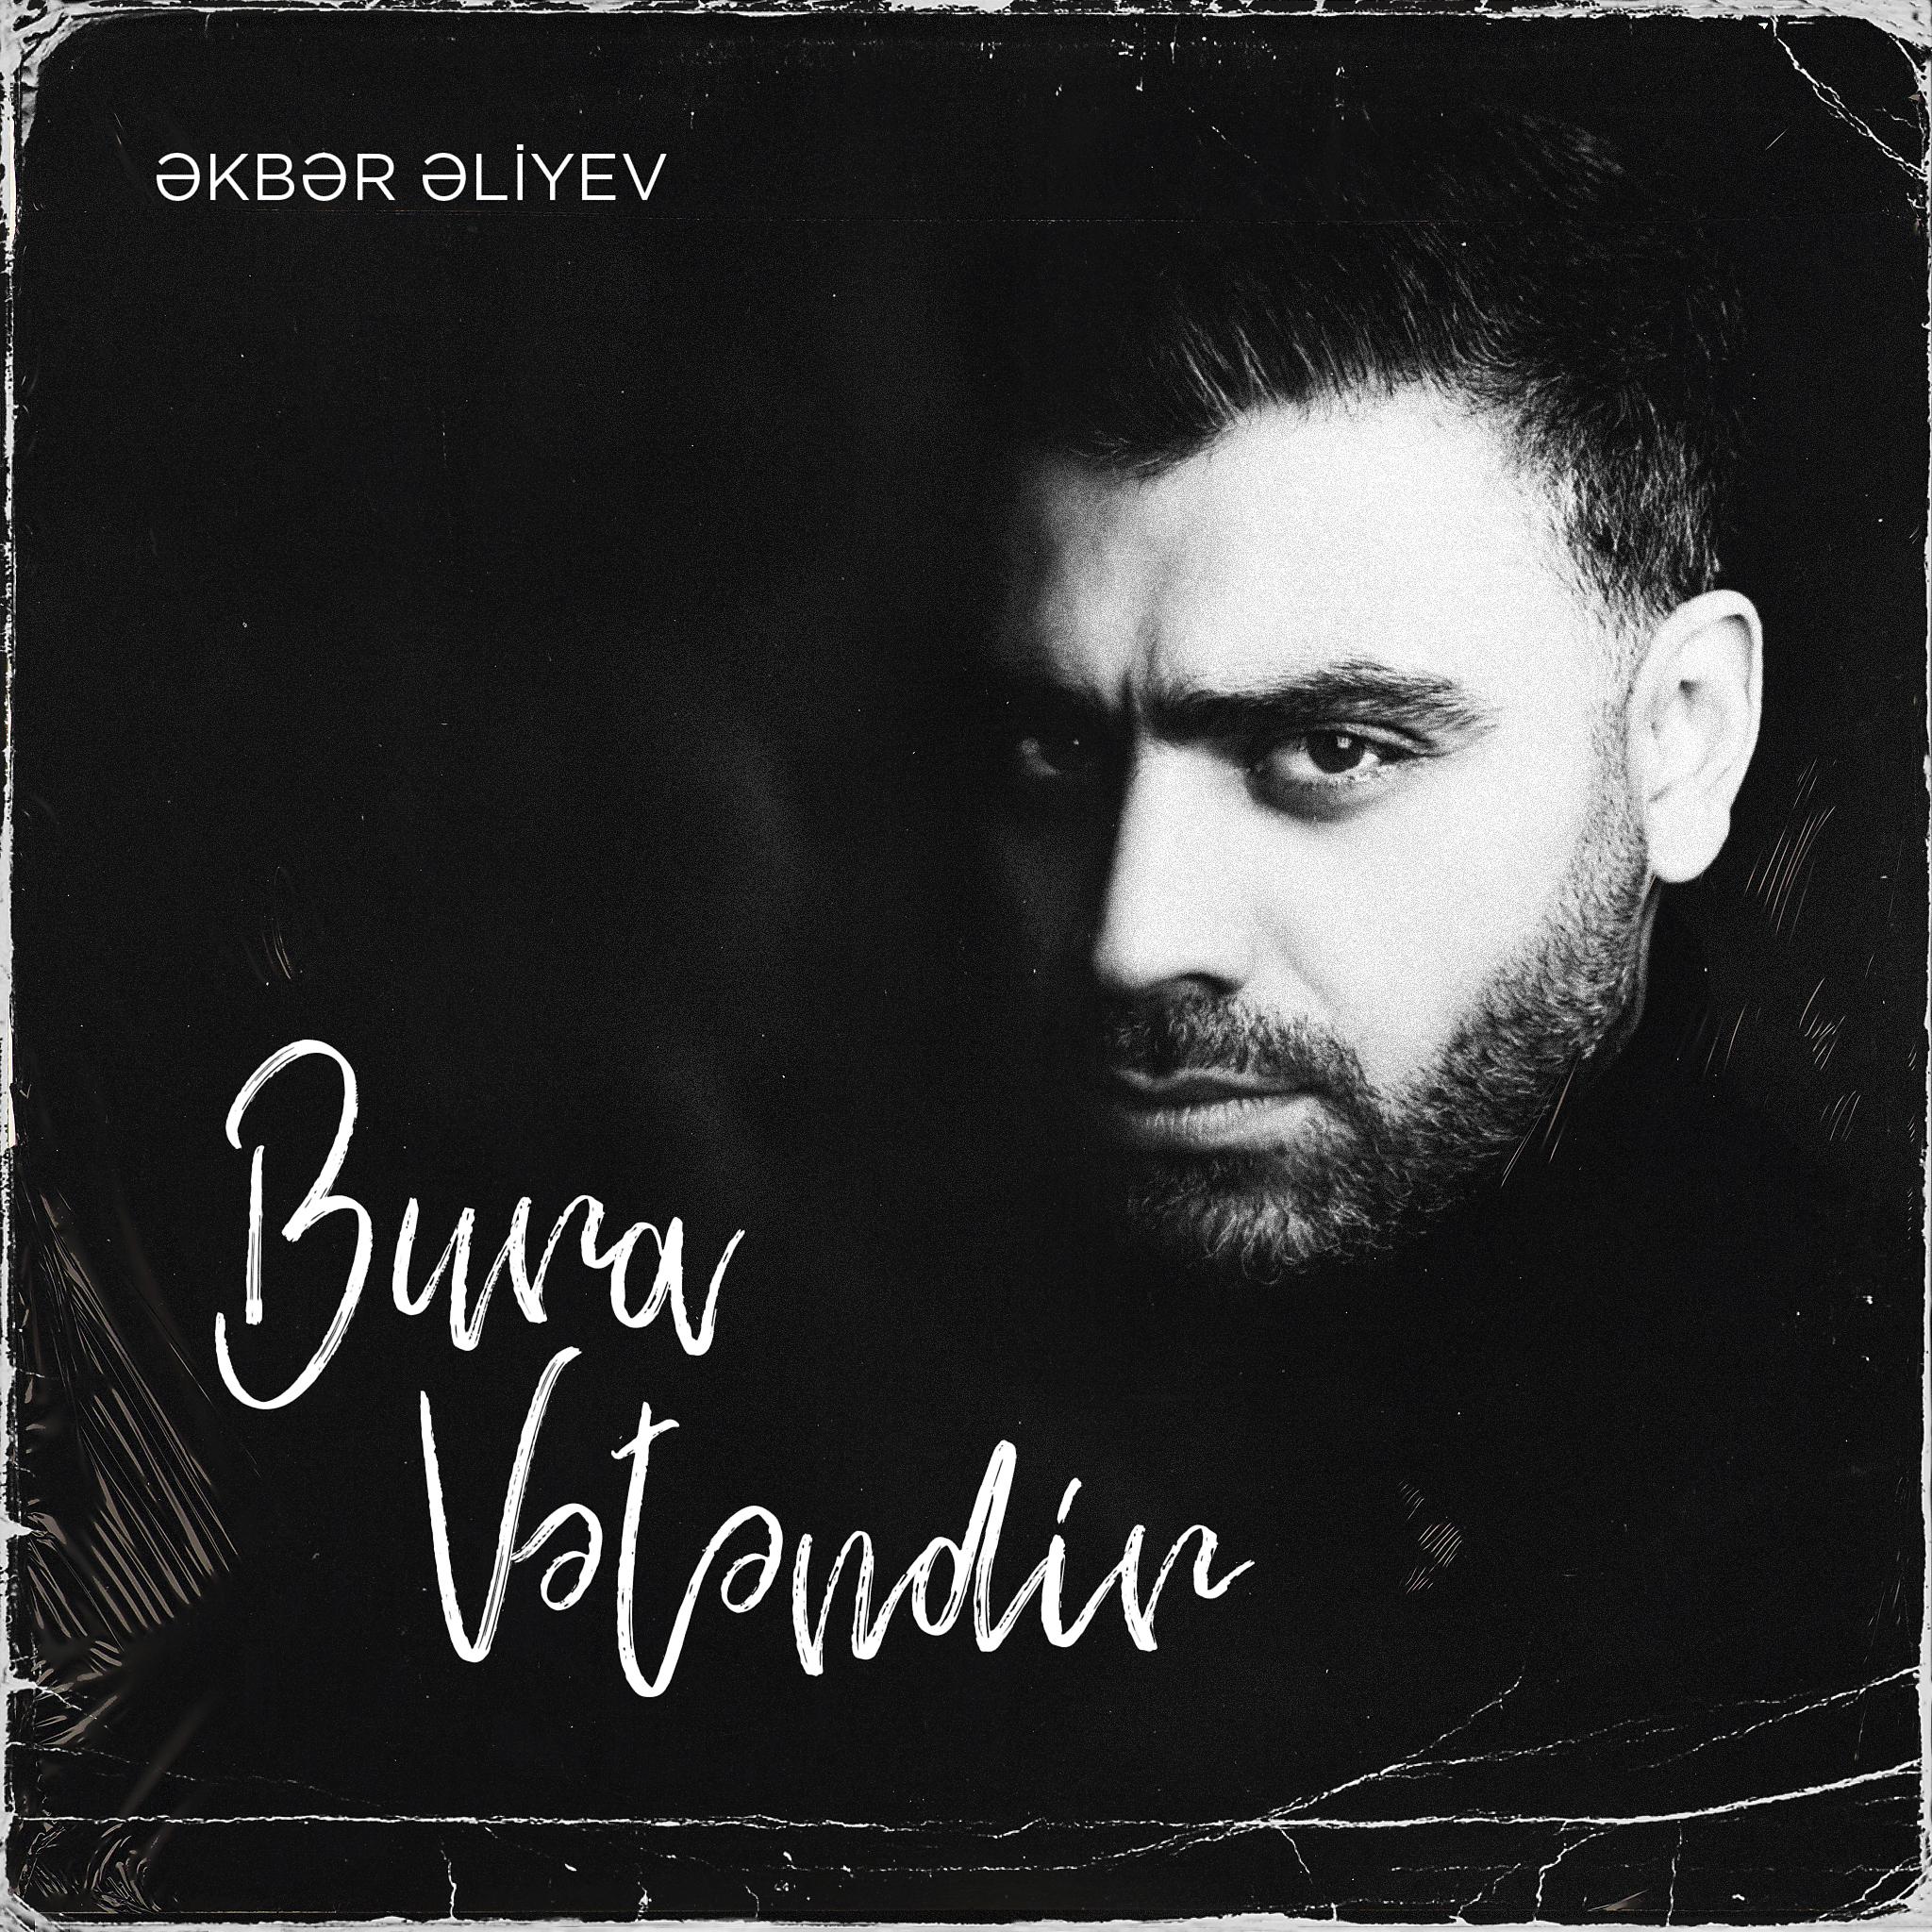 Постер альбома Bura Vətəndir